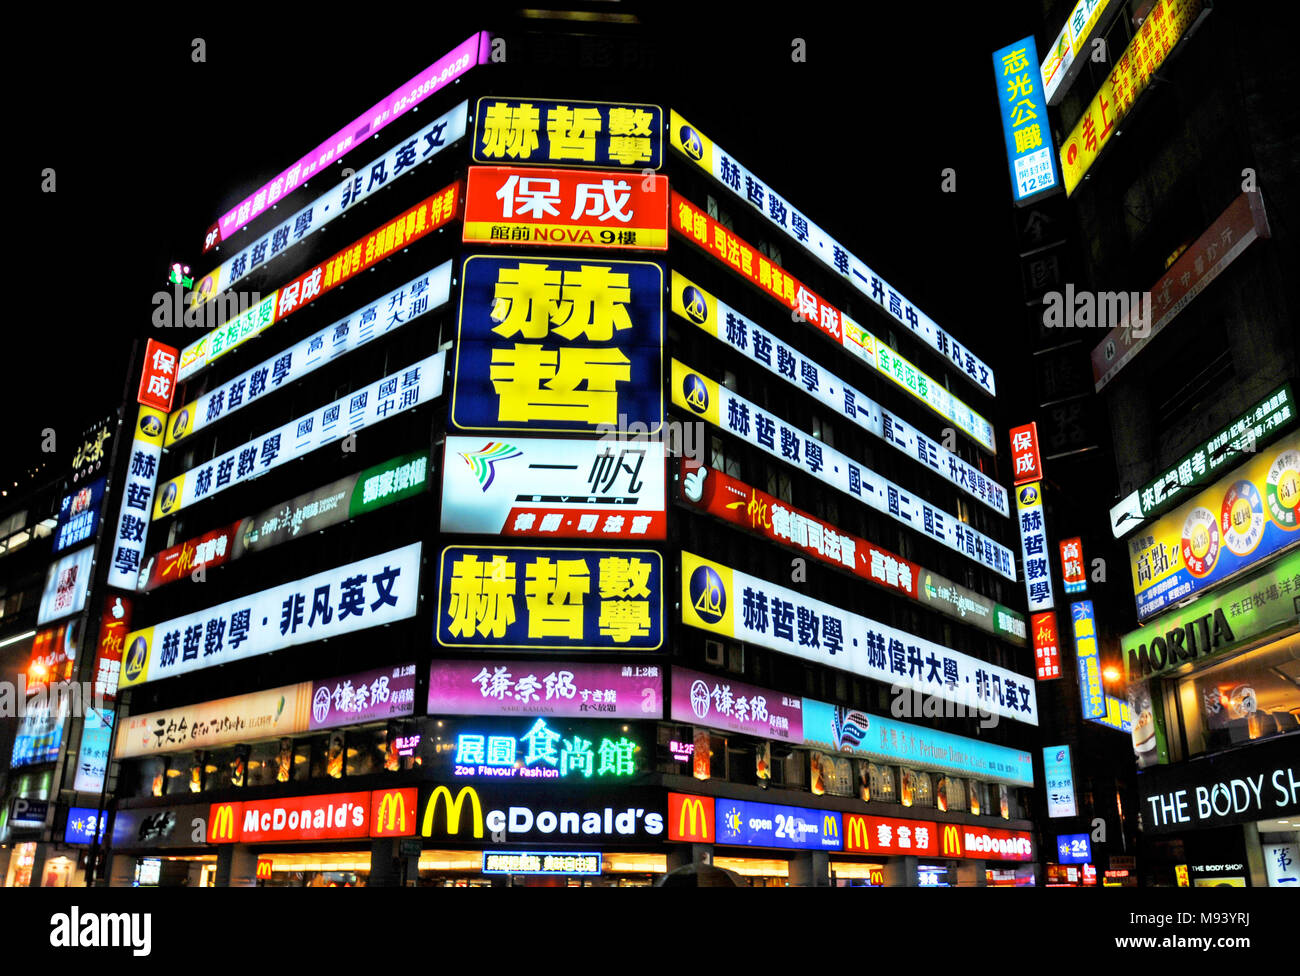 street scene by night, Taipei, Taiwan Stock Photo